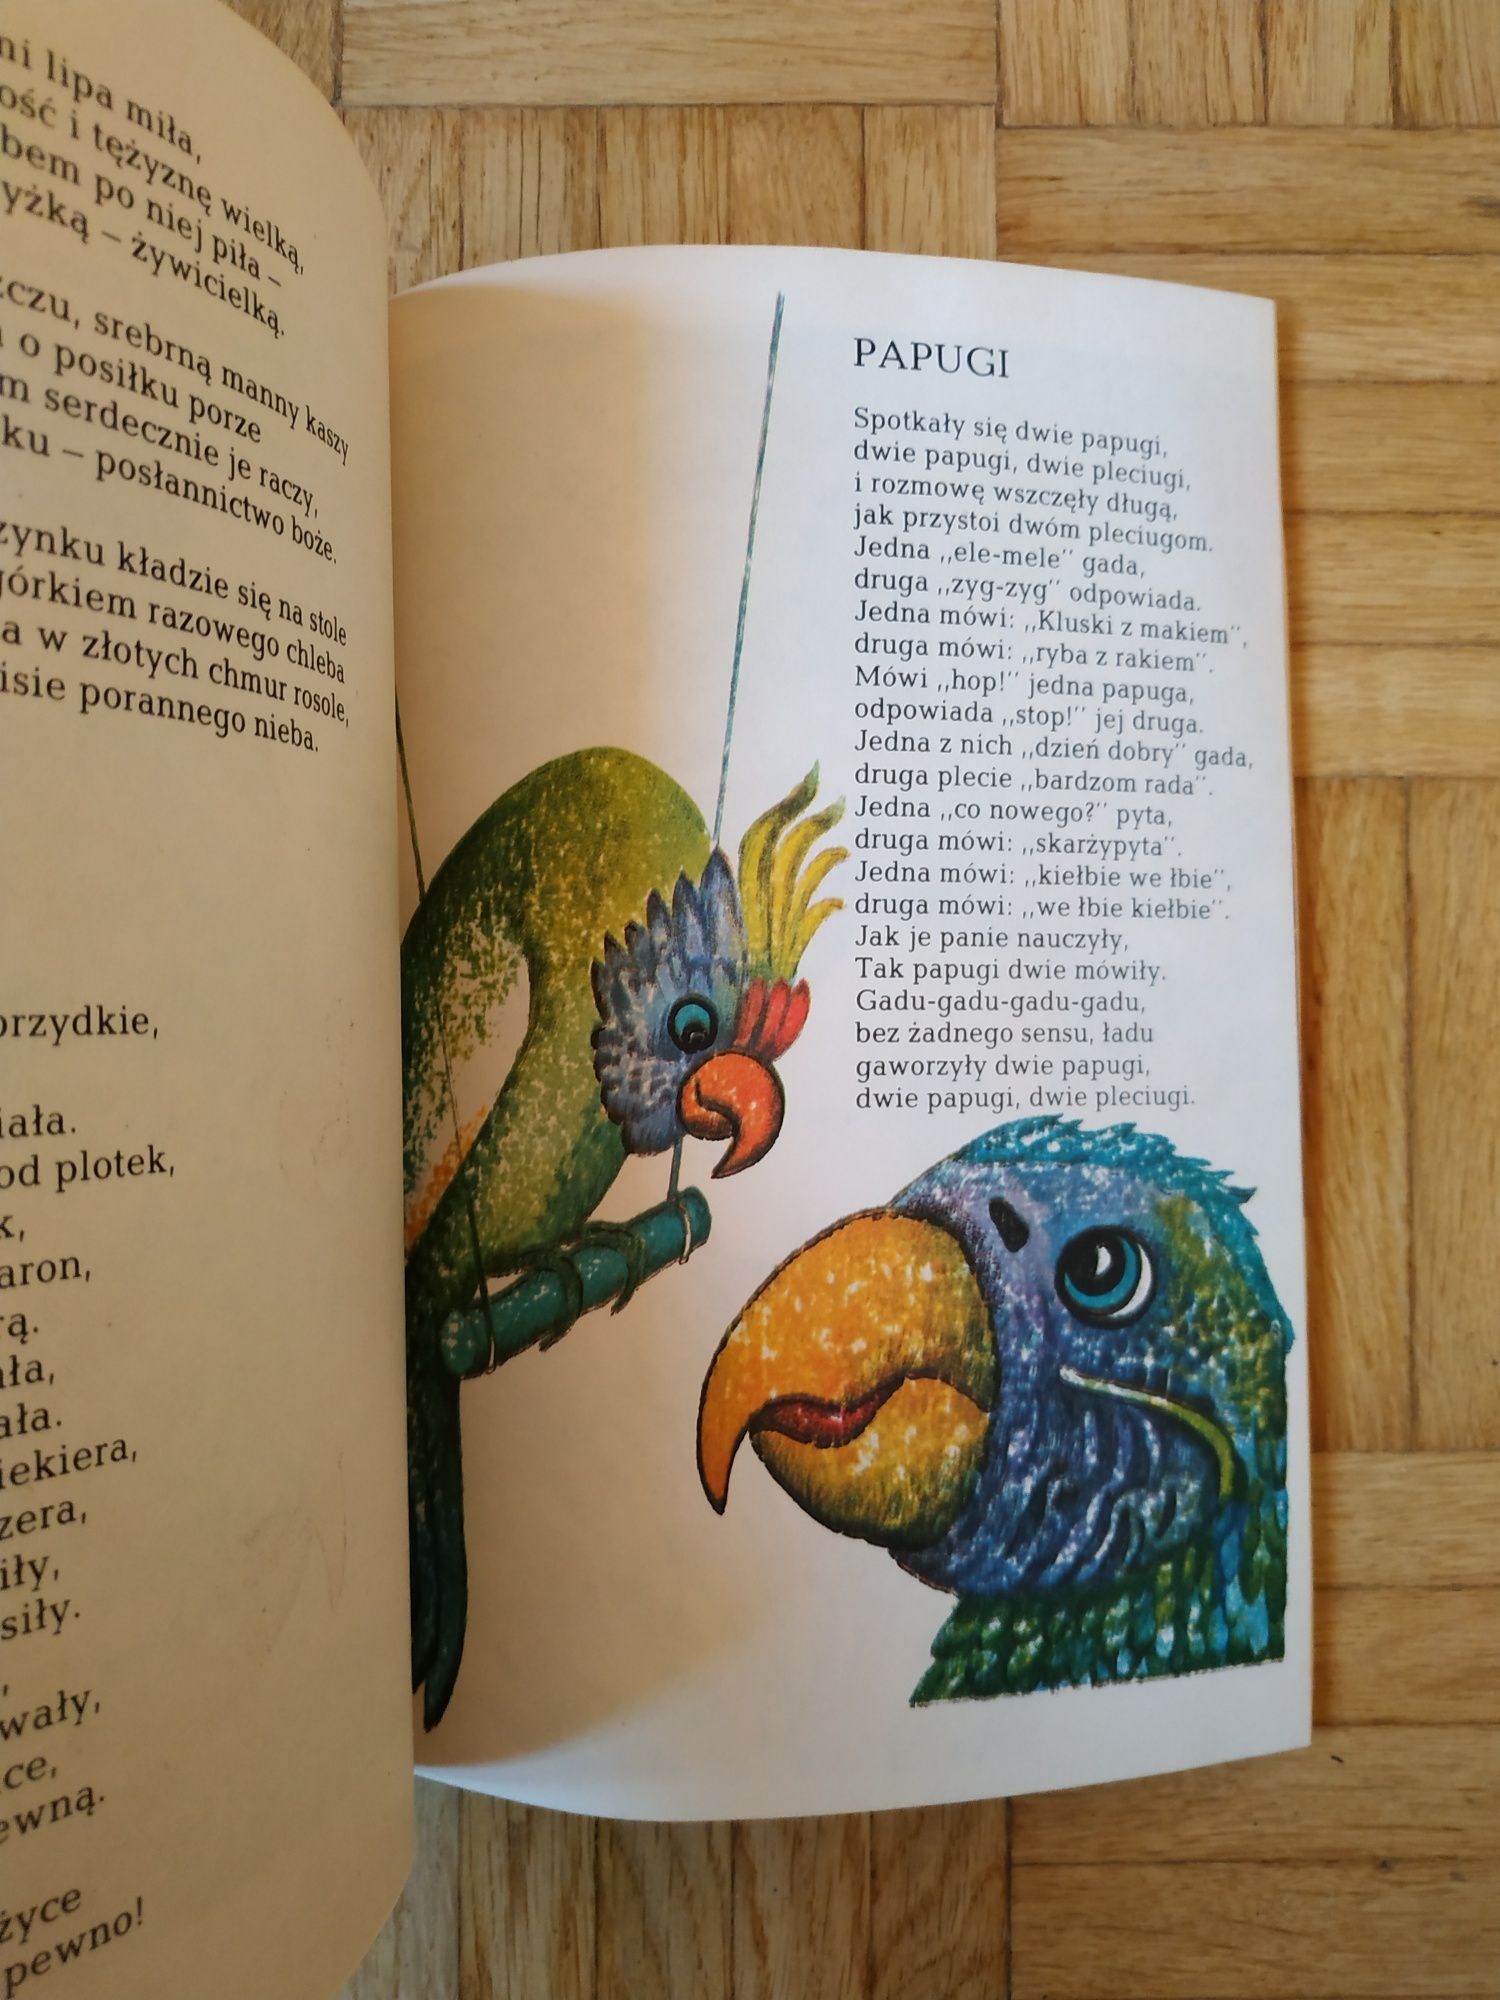 Słobodnik Włodzimierz, Czary-mary, wierszyki dla dzieci, książka 1986